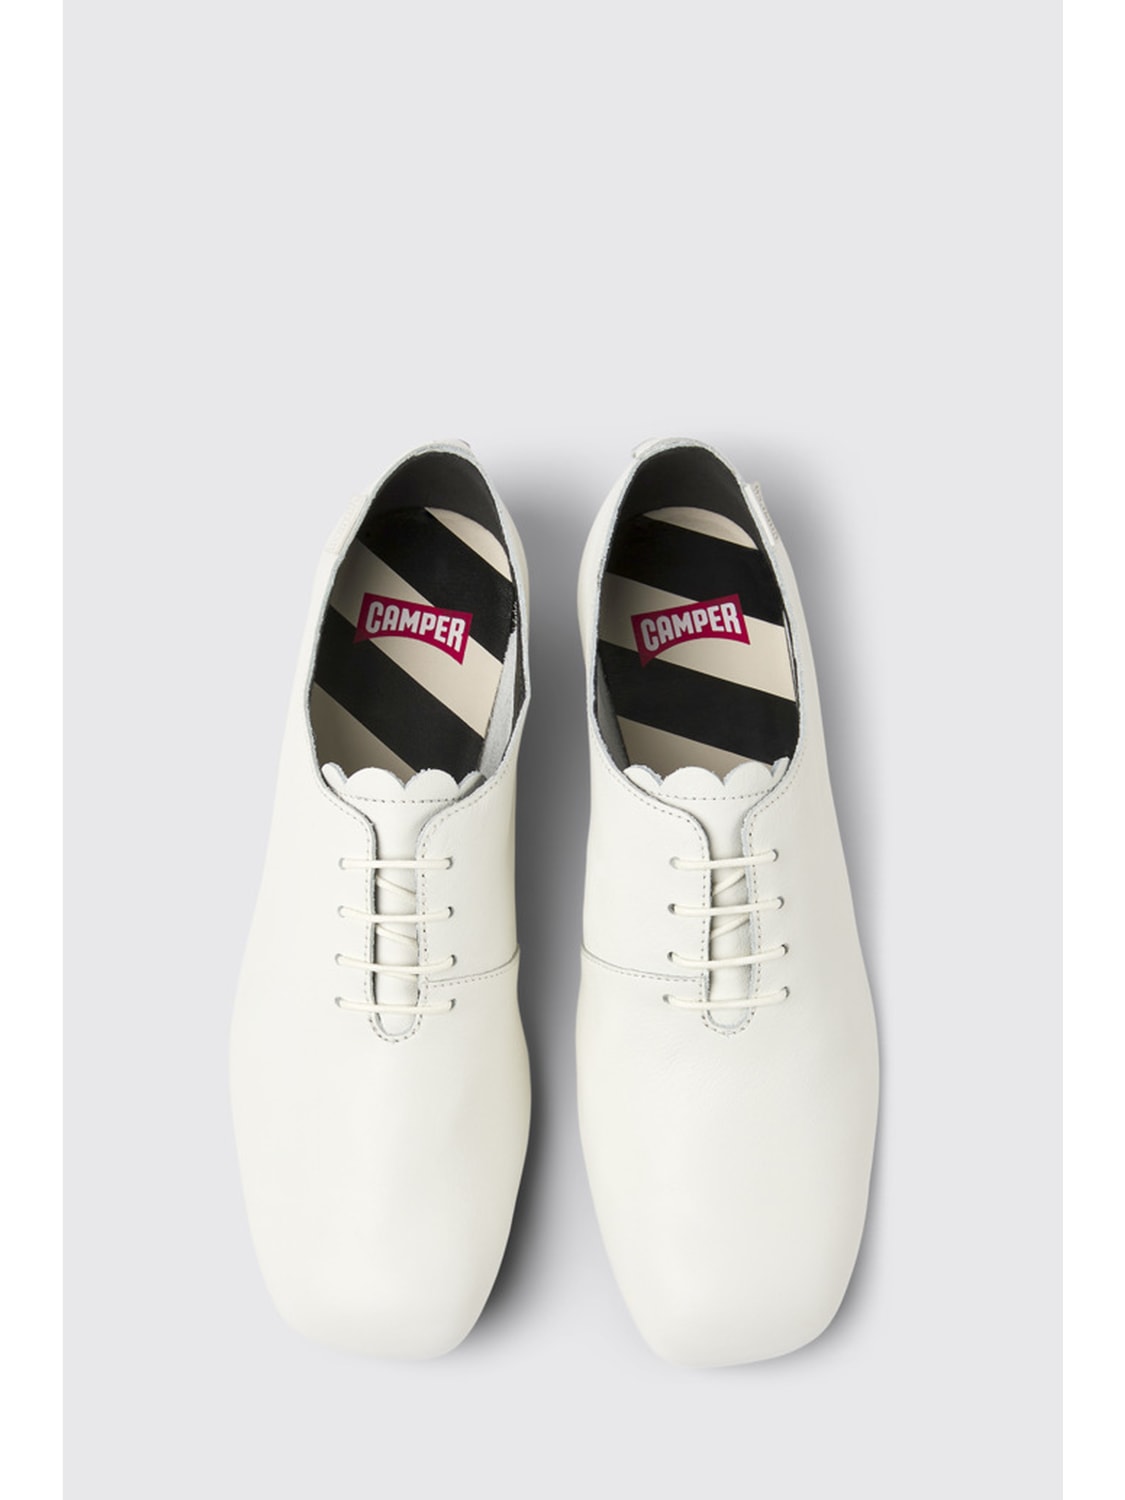 CAMPER: Zapatos de mujer, Blanco | De Cordones Camper K201484-001 CASI MYRA en en GIGLIO.COM